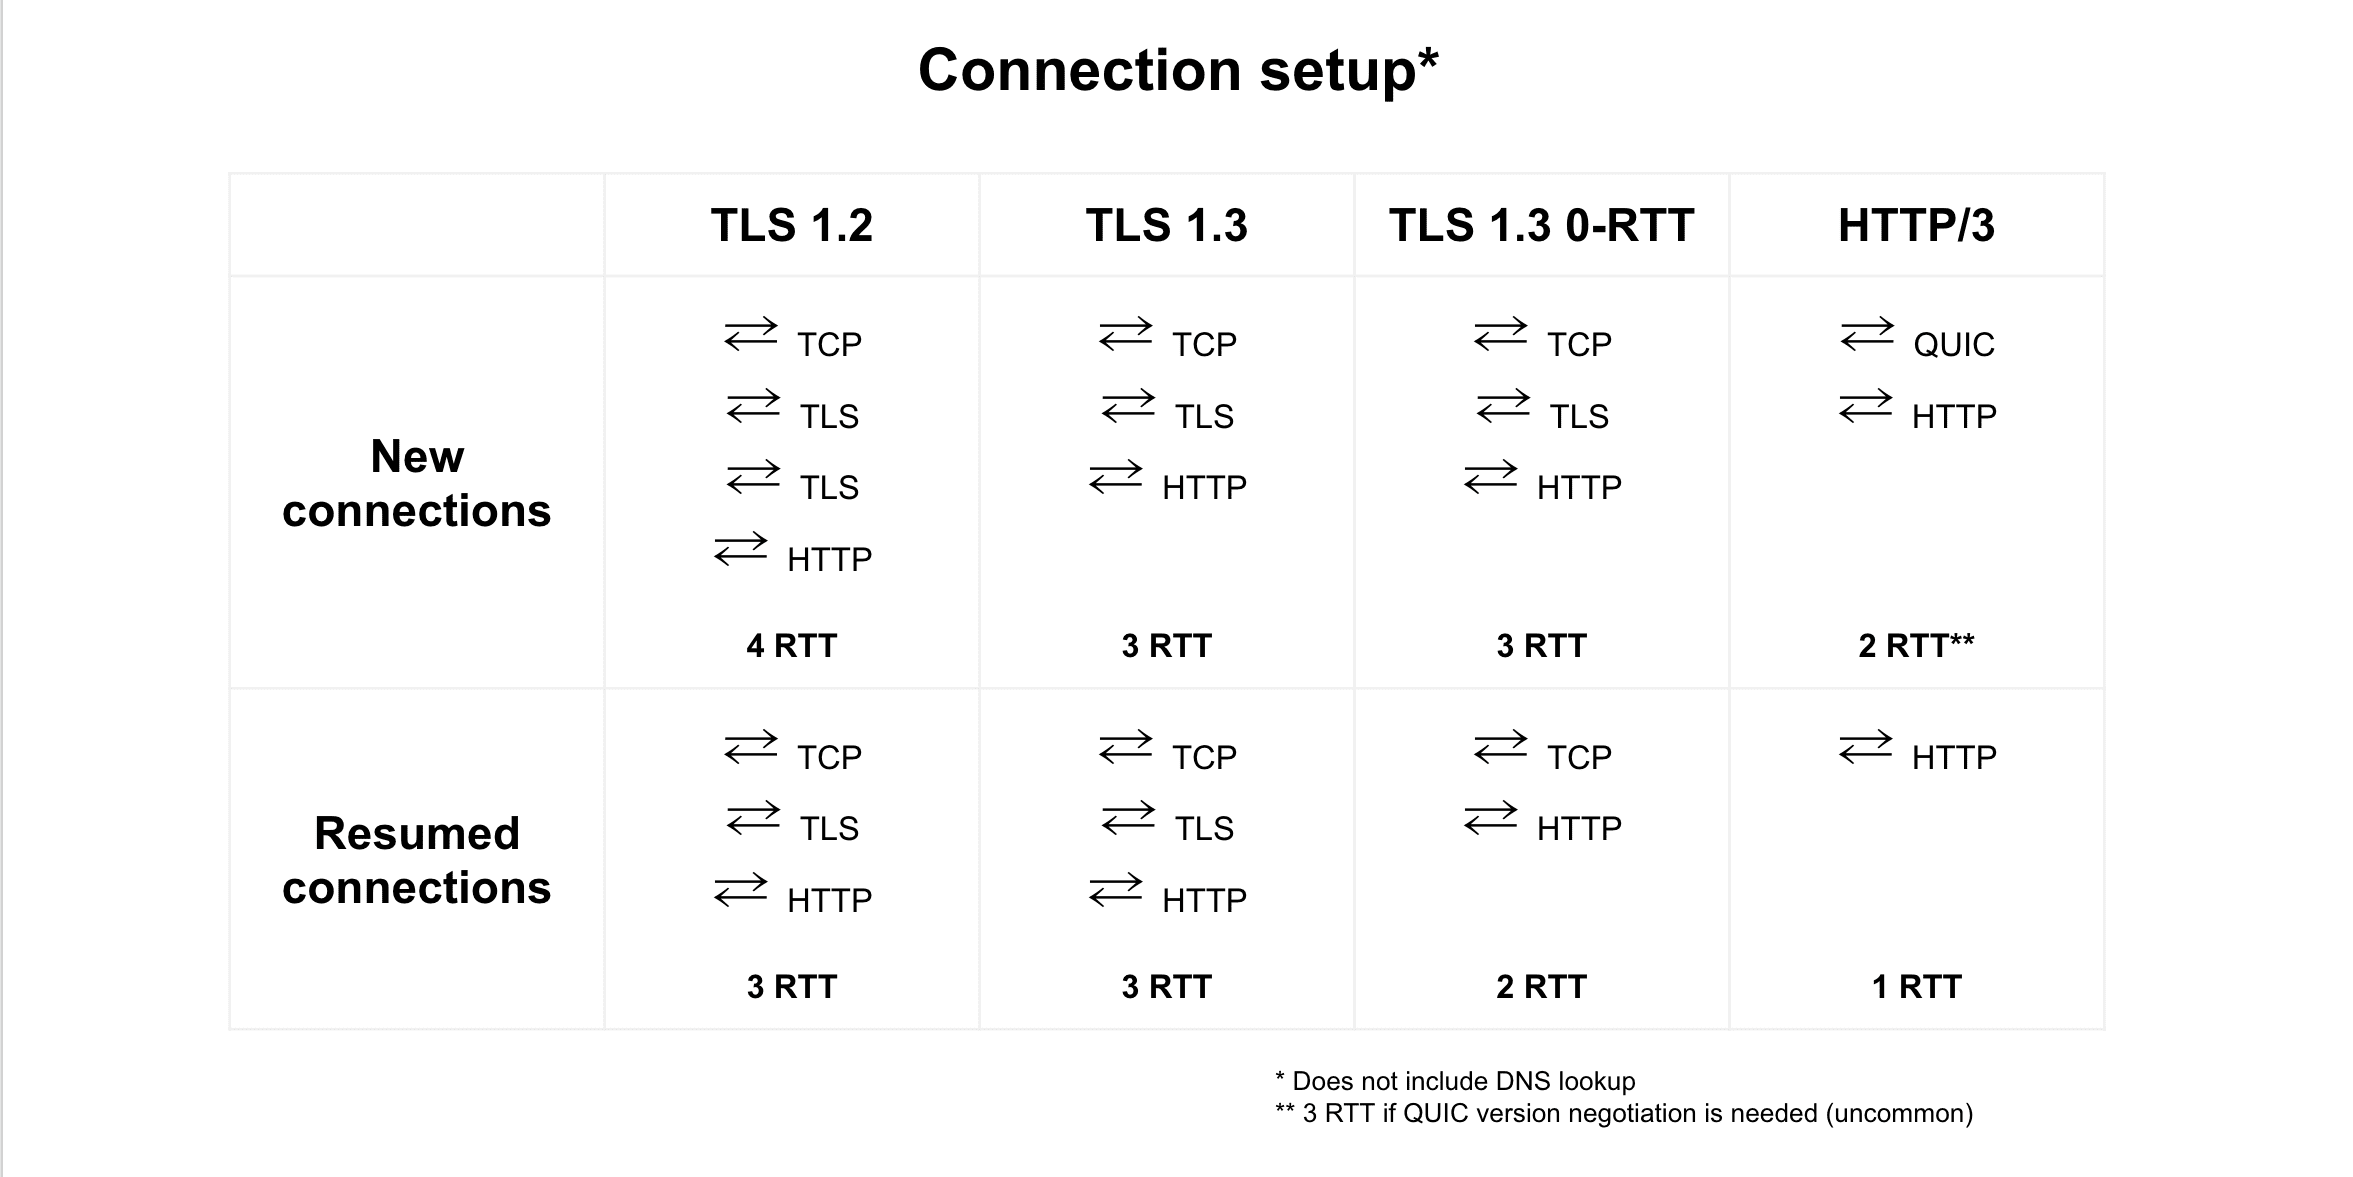 Vergleich der Verbindungswiederaufnahme von TLS 1.2, TLS 1.3, TLS 1.3 0-RTT und HTTP/3